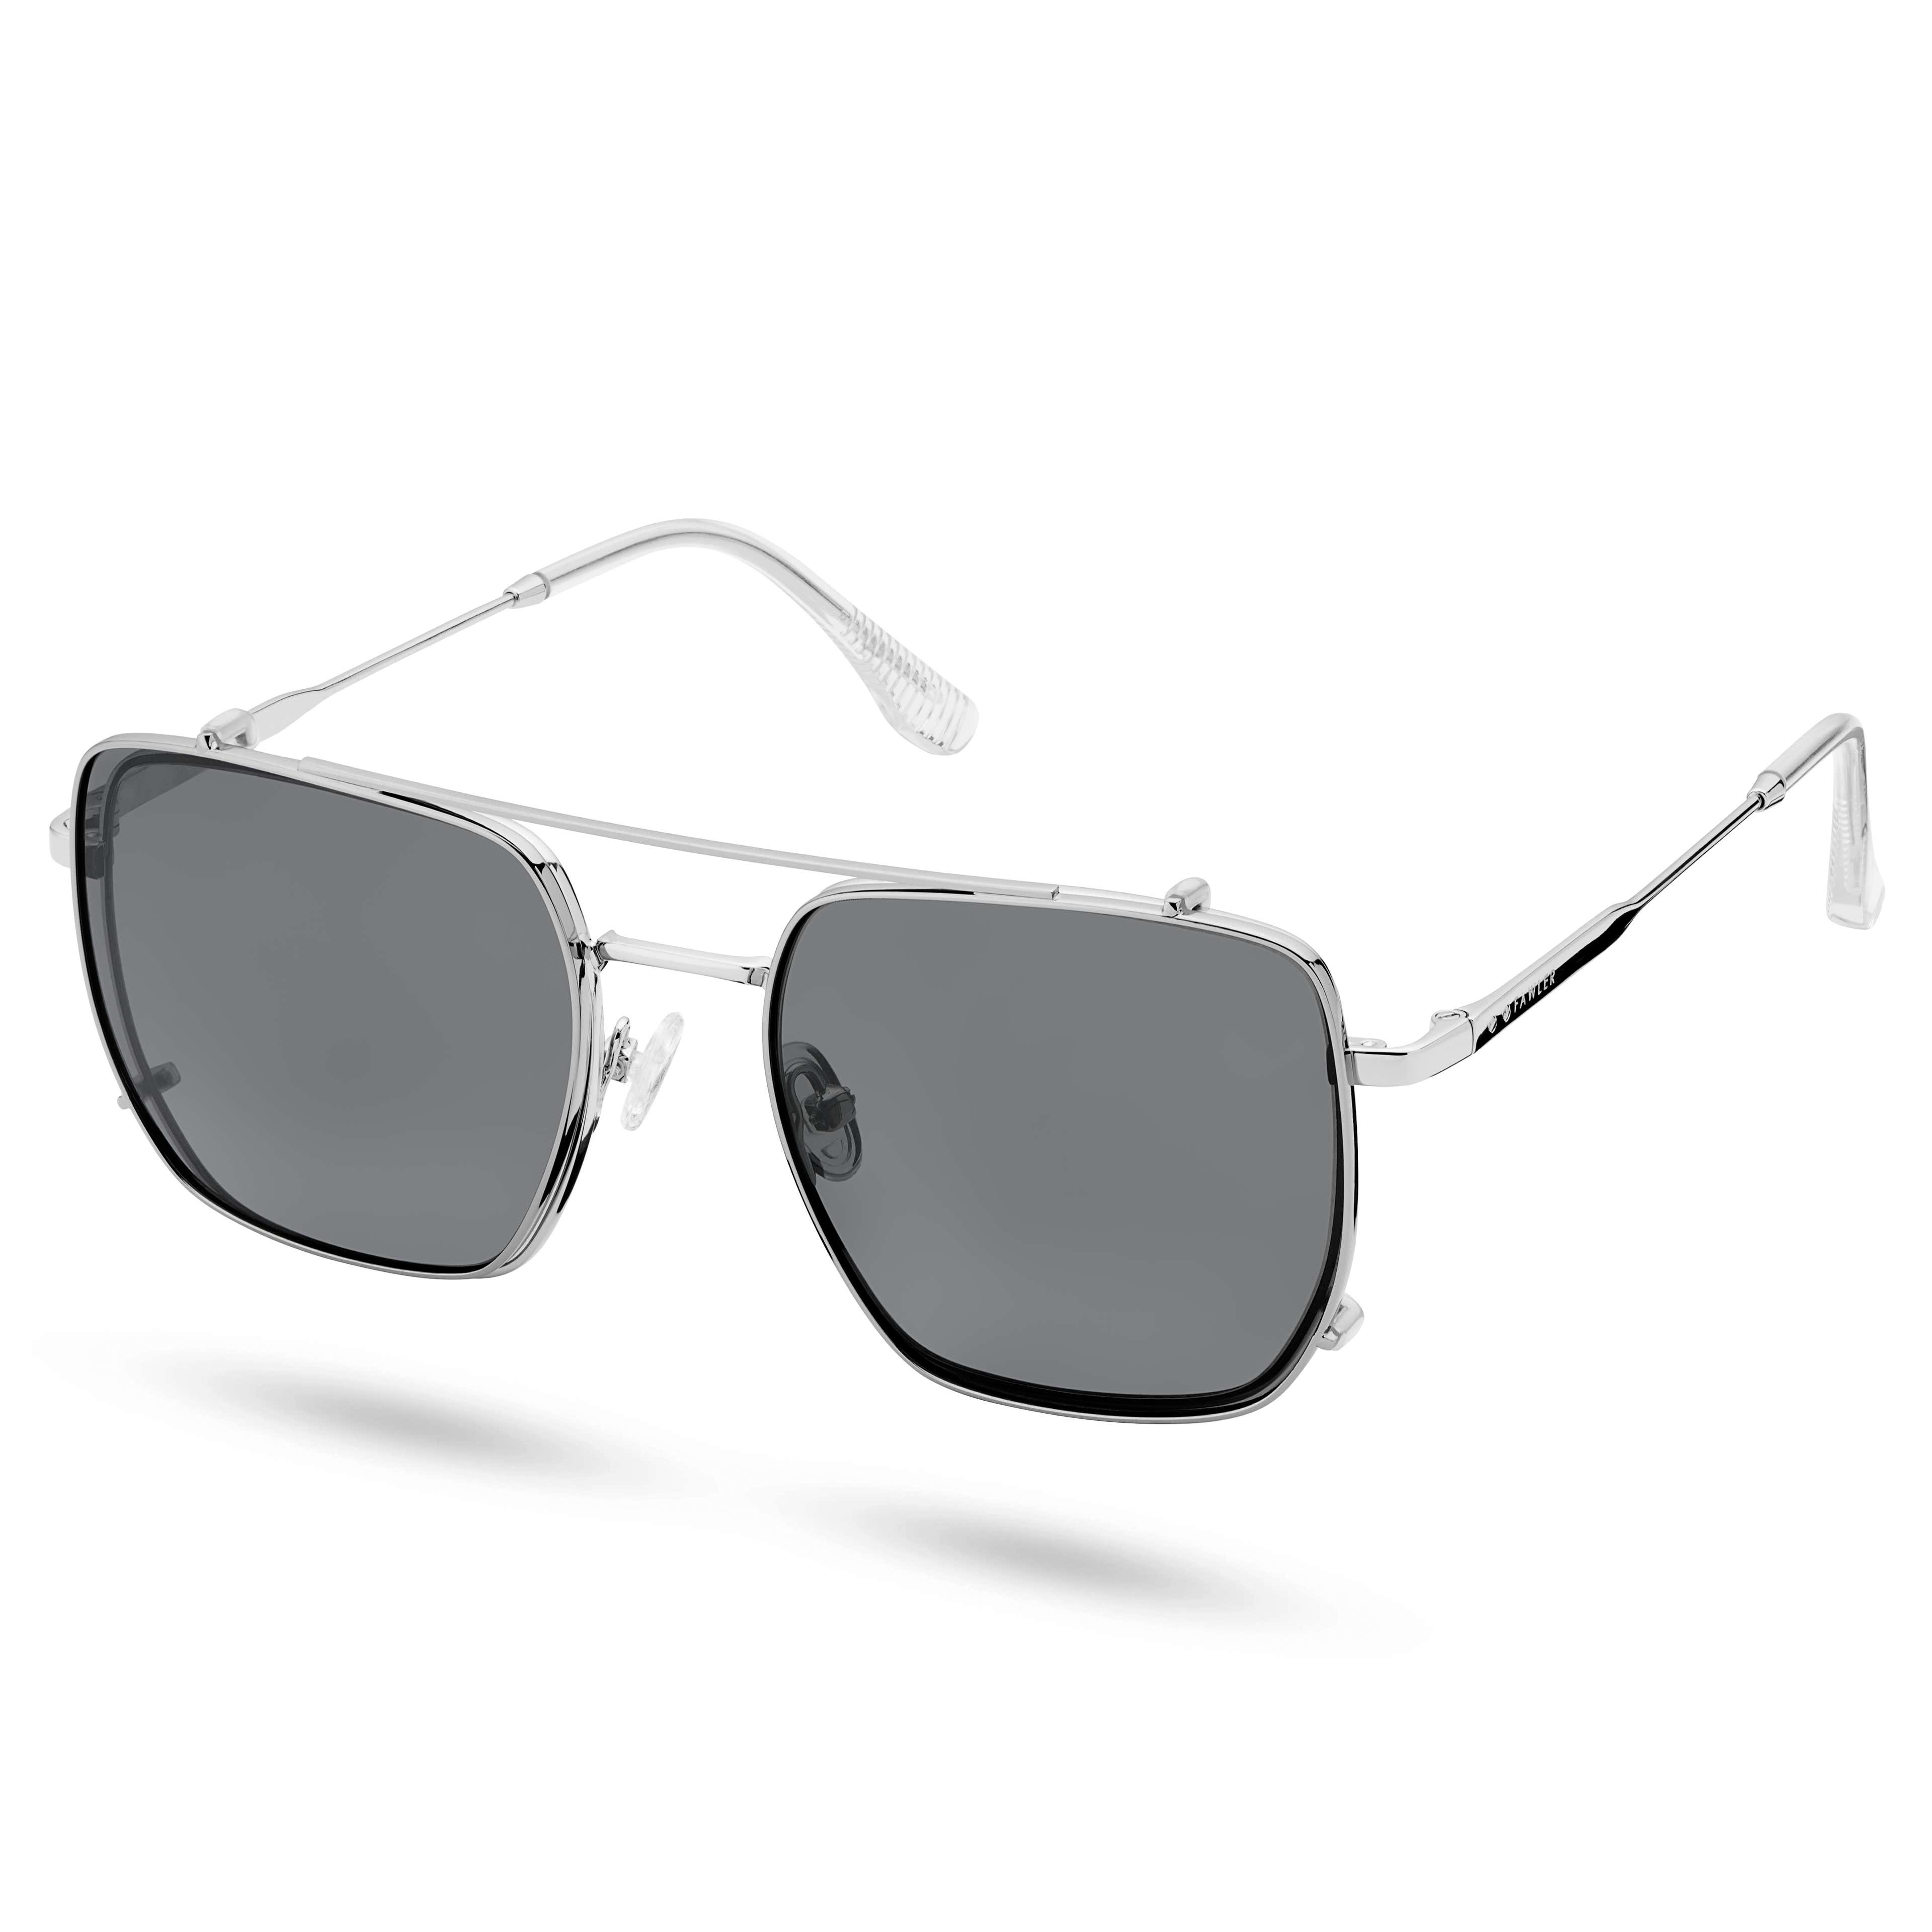 Stalowe okulary z przezroczystymi soczewkami blokującymi światło niebieskie i polaryzacyjnymi okularami przeciwsłonecznymi na klips